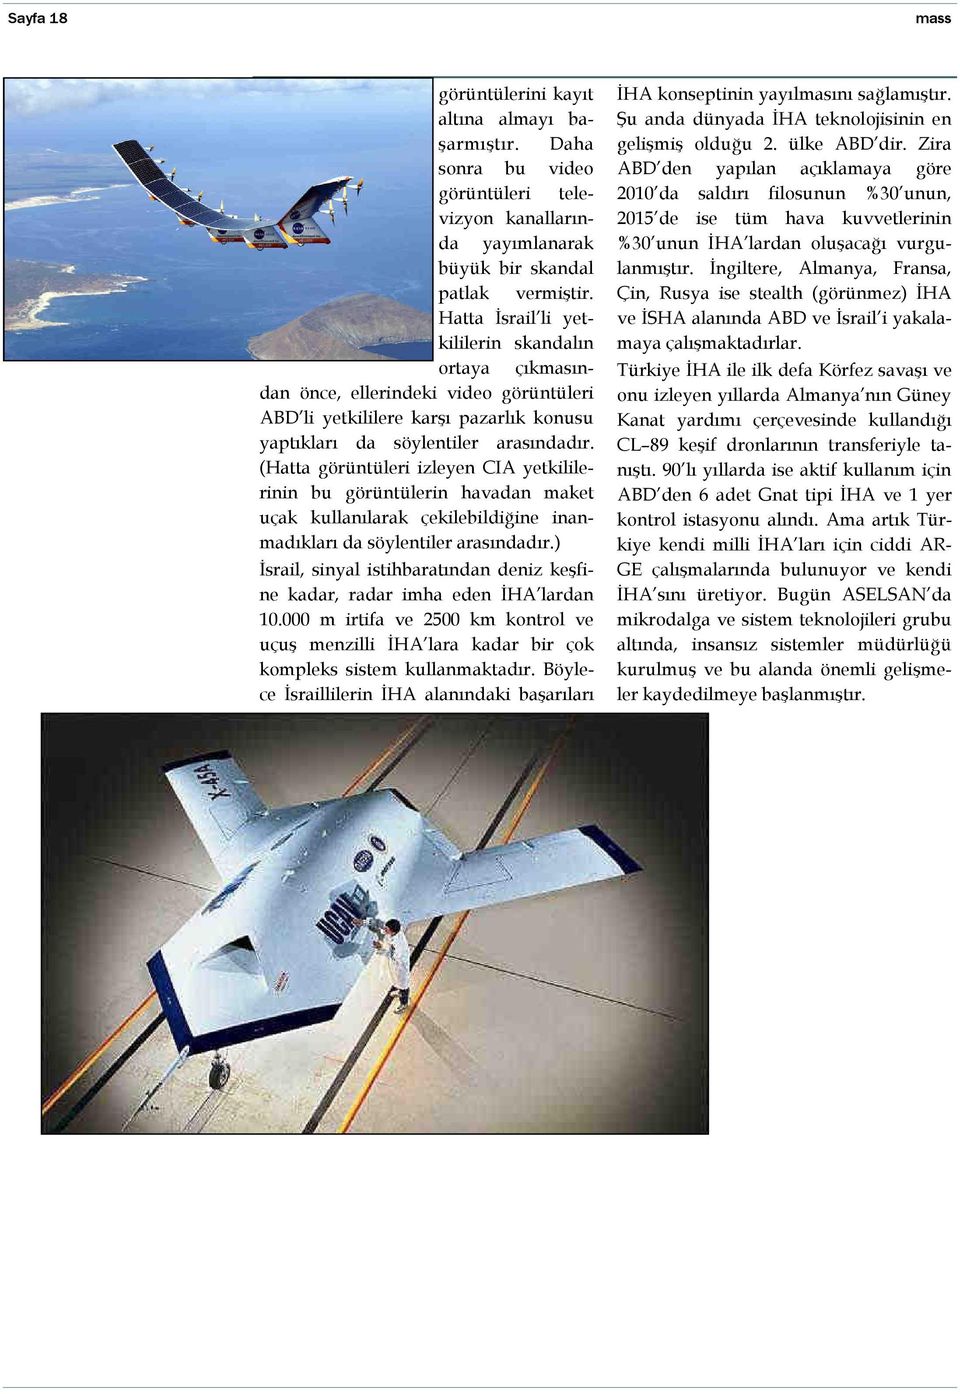 (Hatta görüntüleri izleyen CIA yetkililerinin bu görüntülerin havadan maket uçak kullanılarak çekilebildiğine inanmadıkları da söylentiler arasındadır.